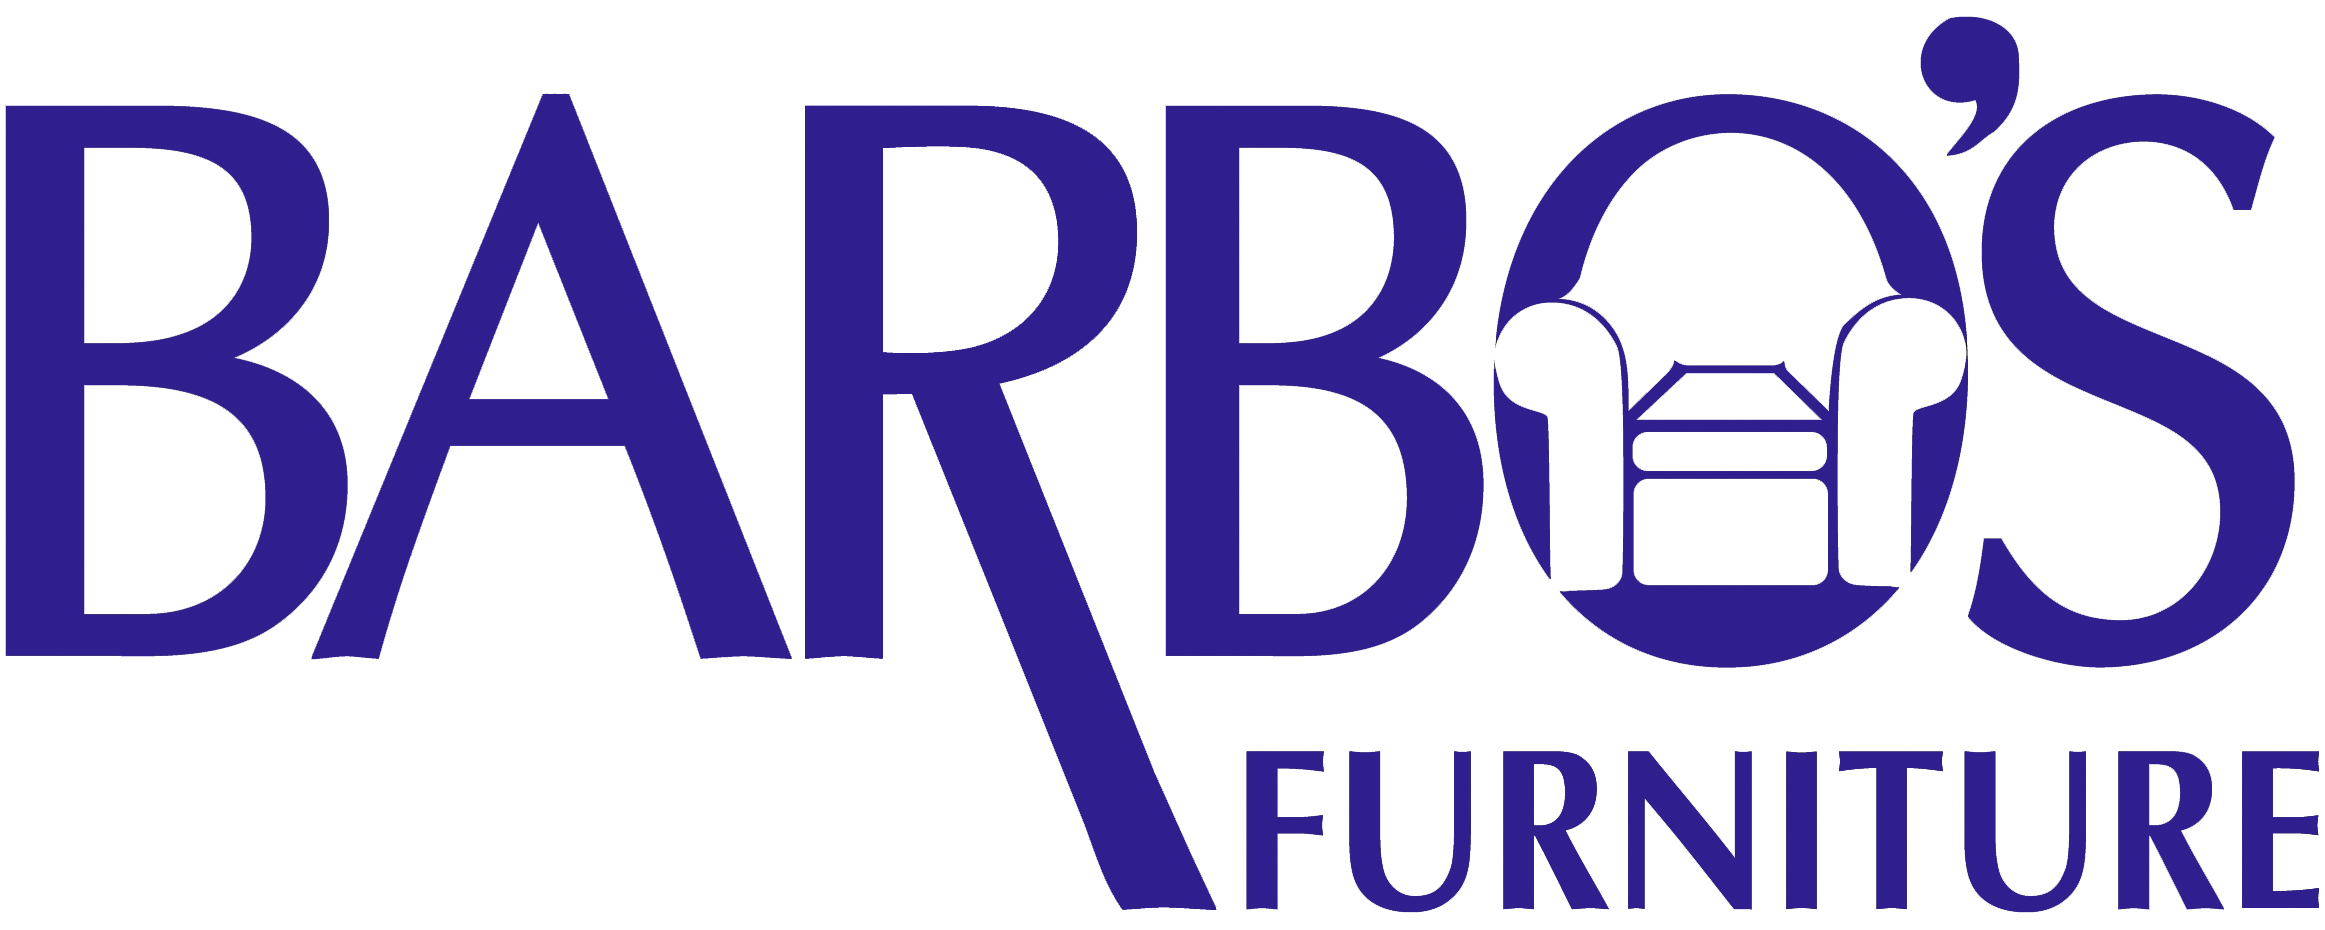 Barbos Furniture logo